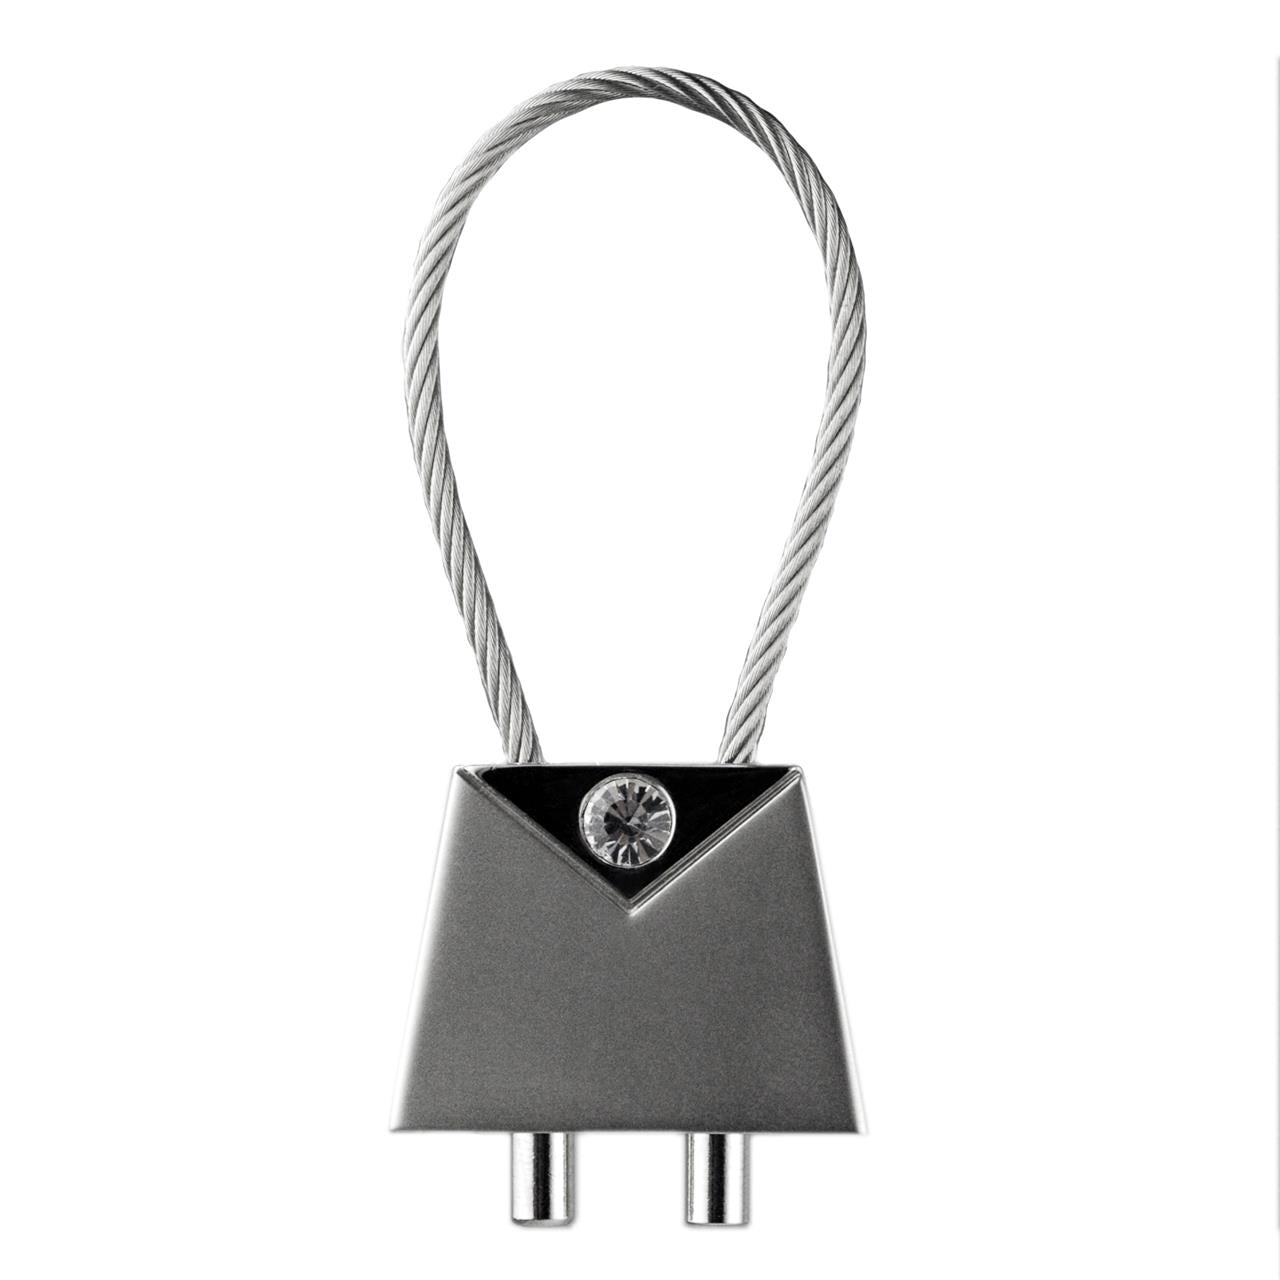 Artex Key Ring - Metal & Diamante (Squared edge)